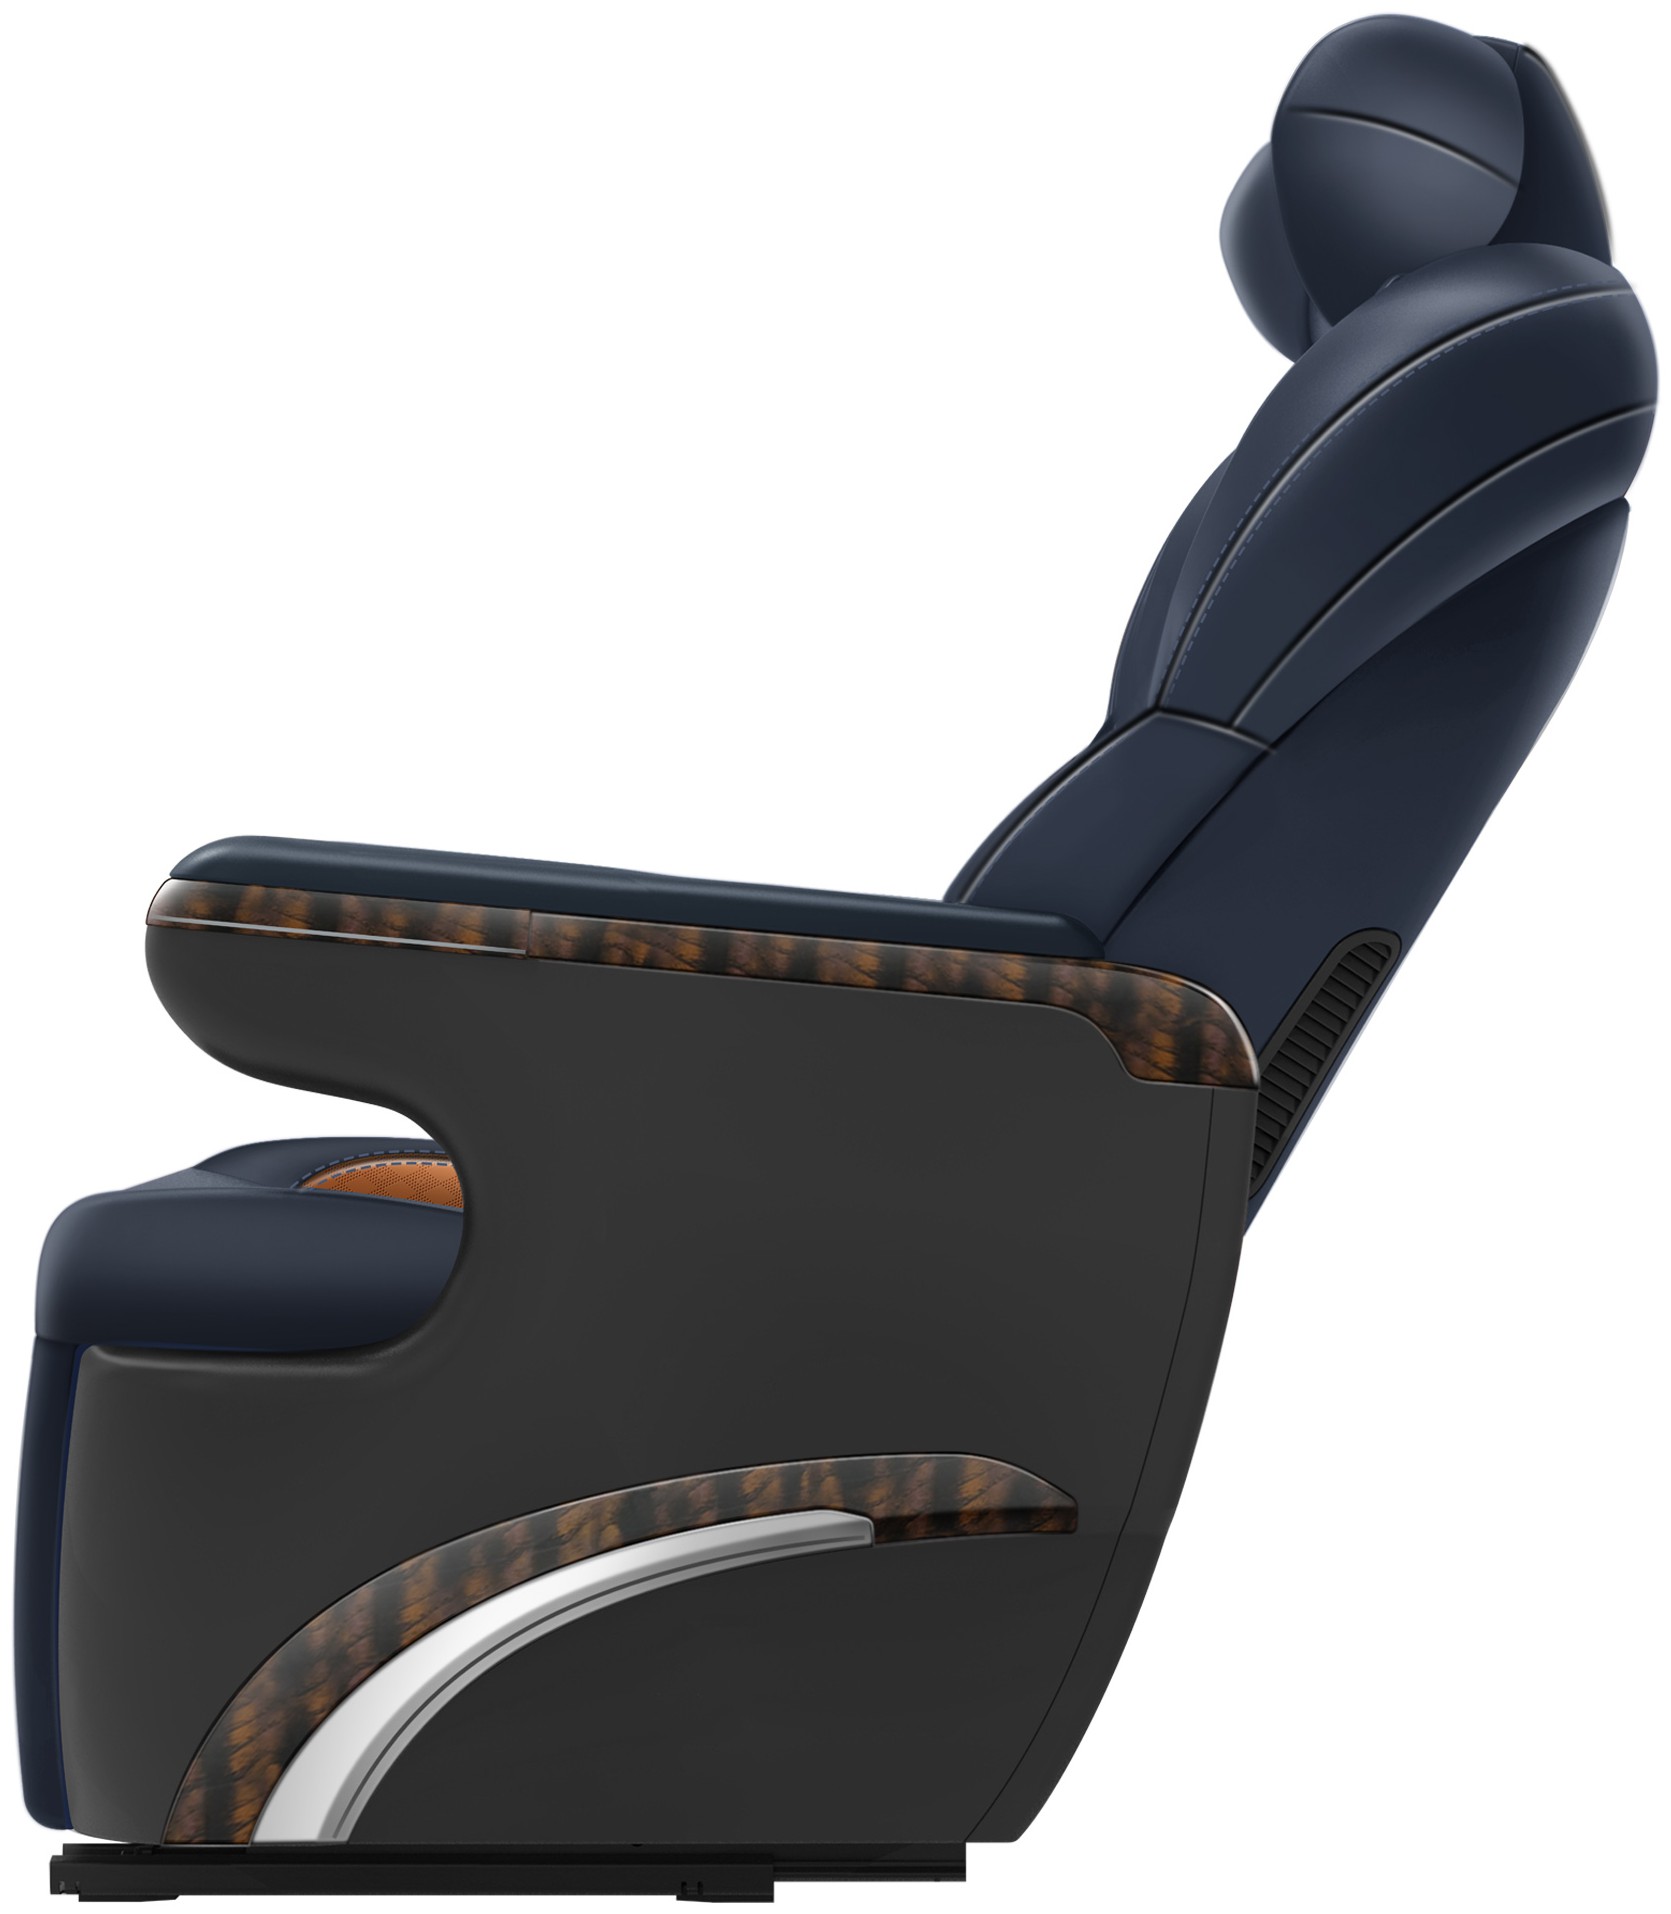 专利详情摘要 1本外观设计产品的名称:汽车座椅2